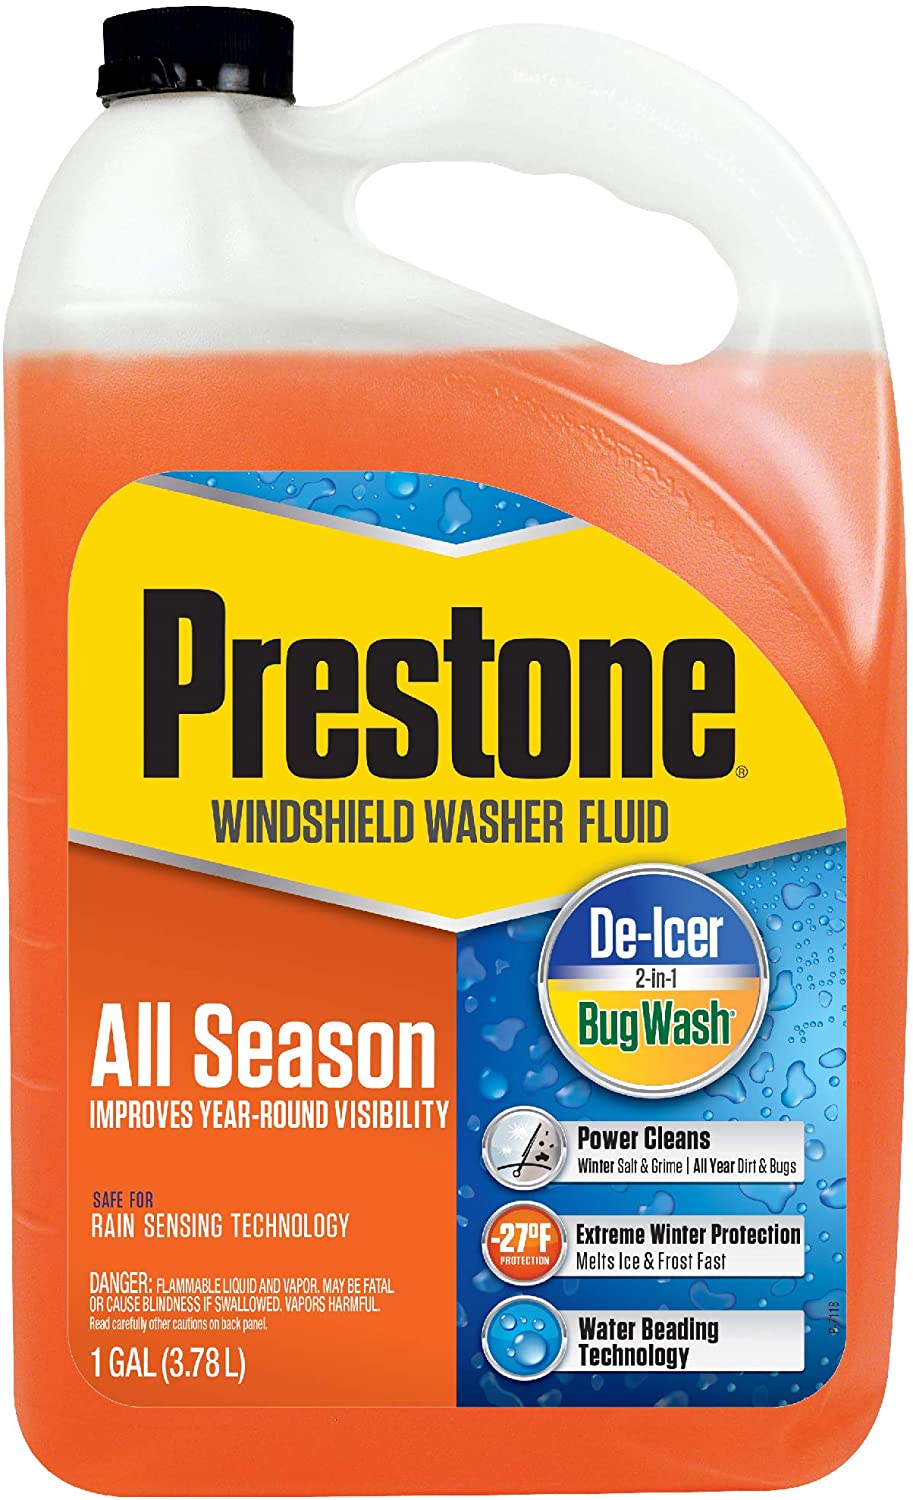 Prestone® 2-in-1 Windshield Washer Fluid - Case of 6 Bottles